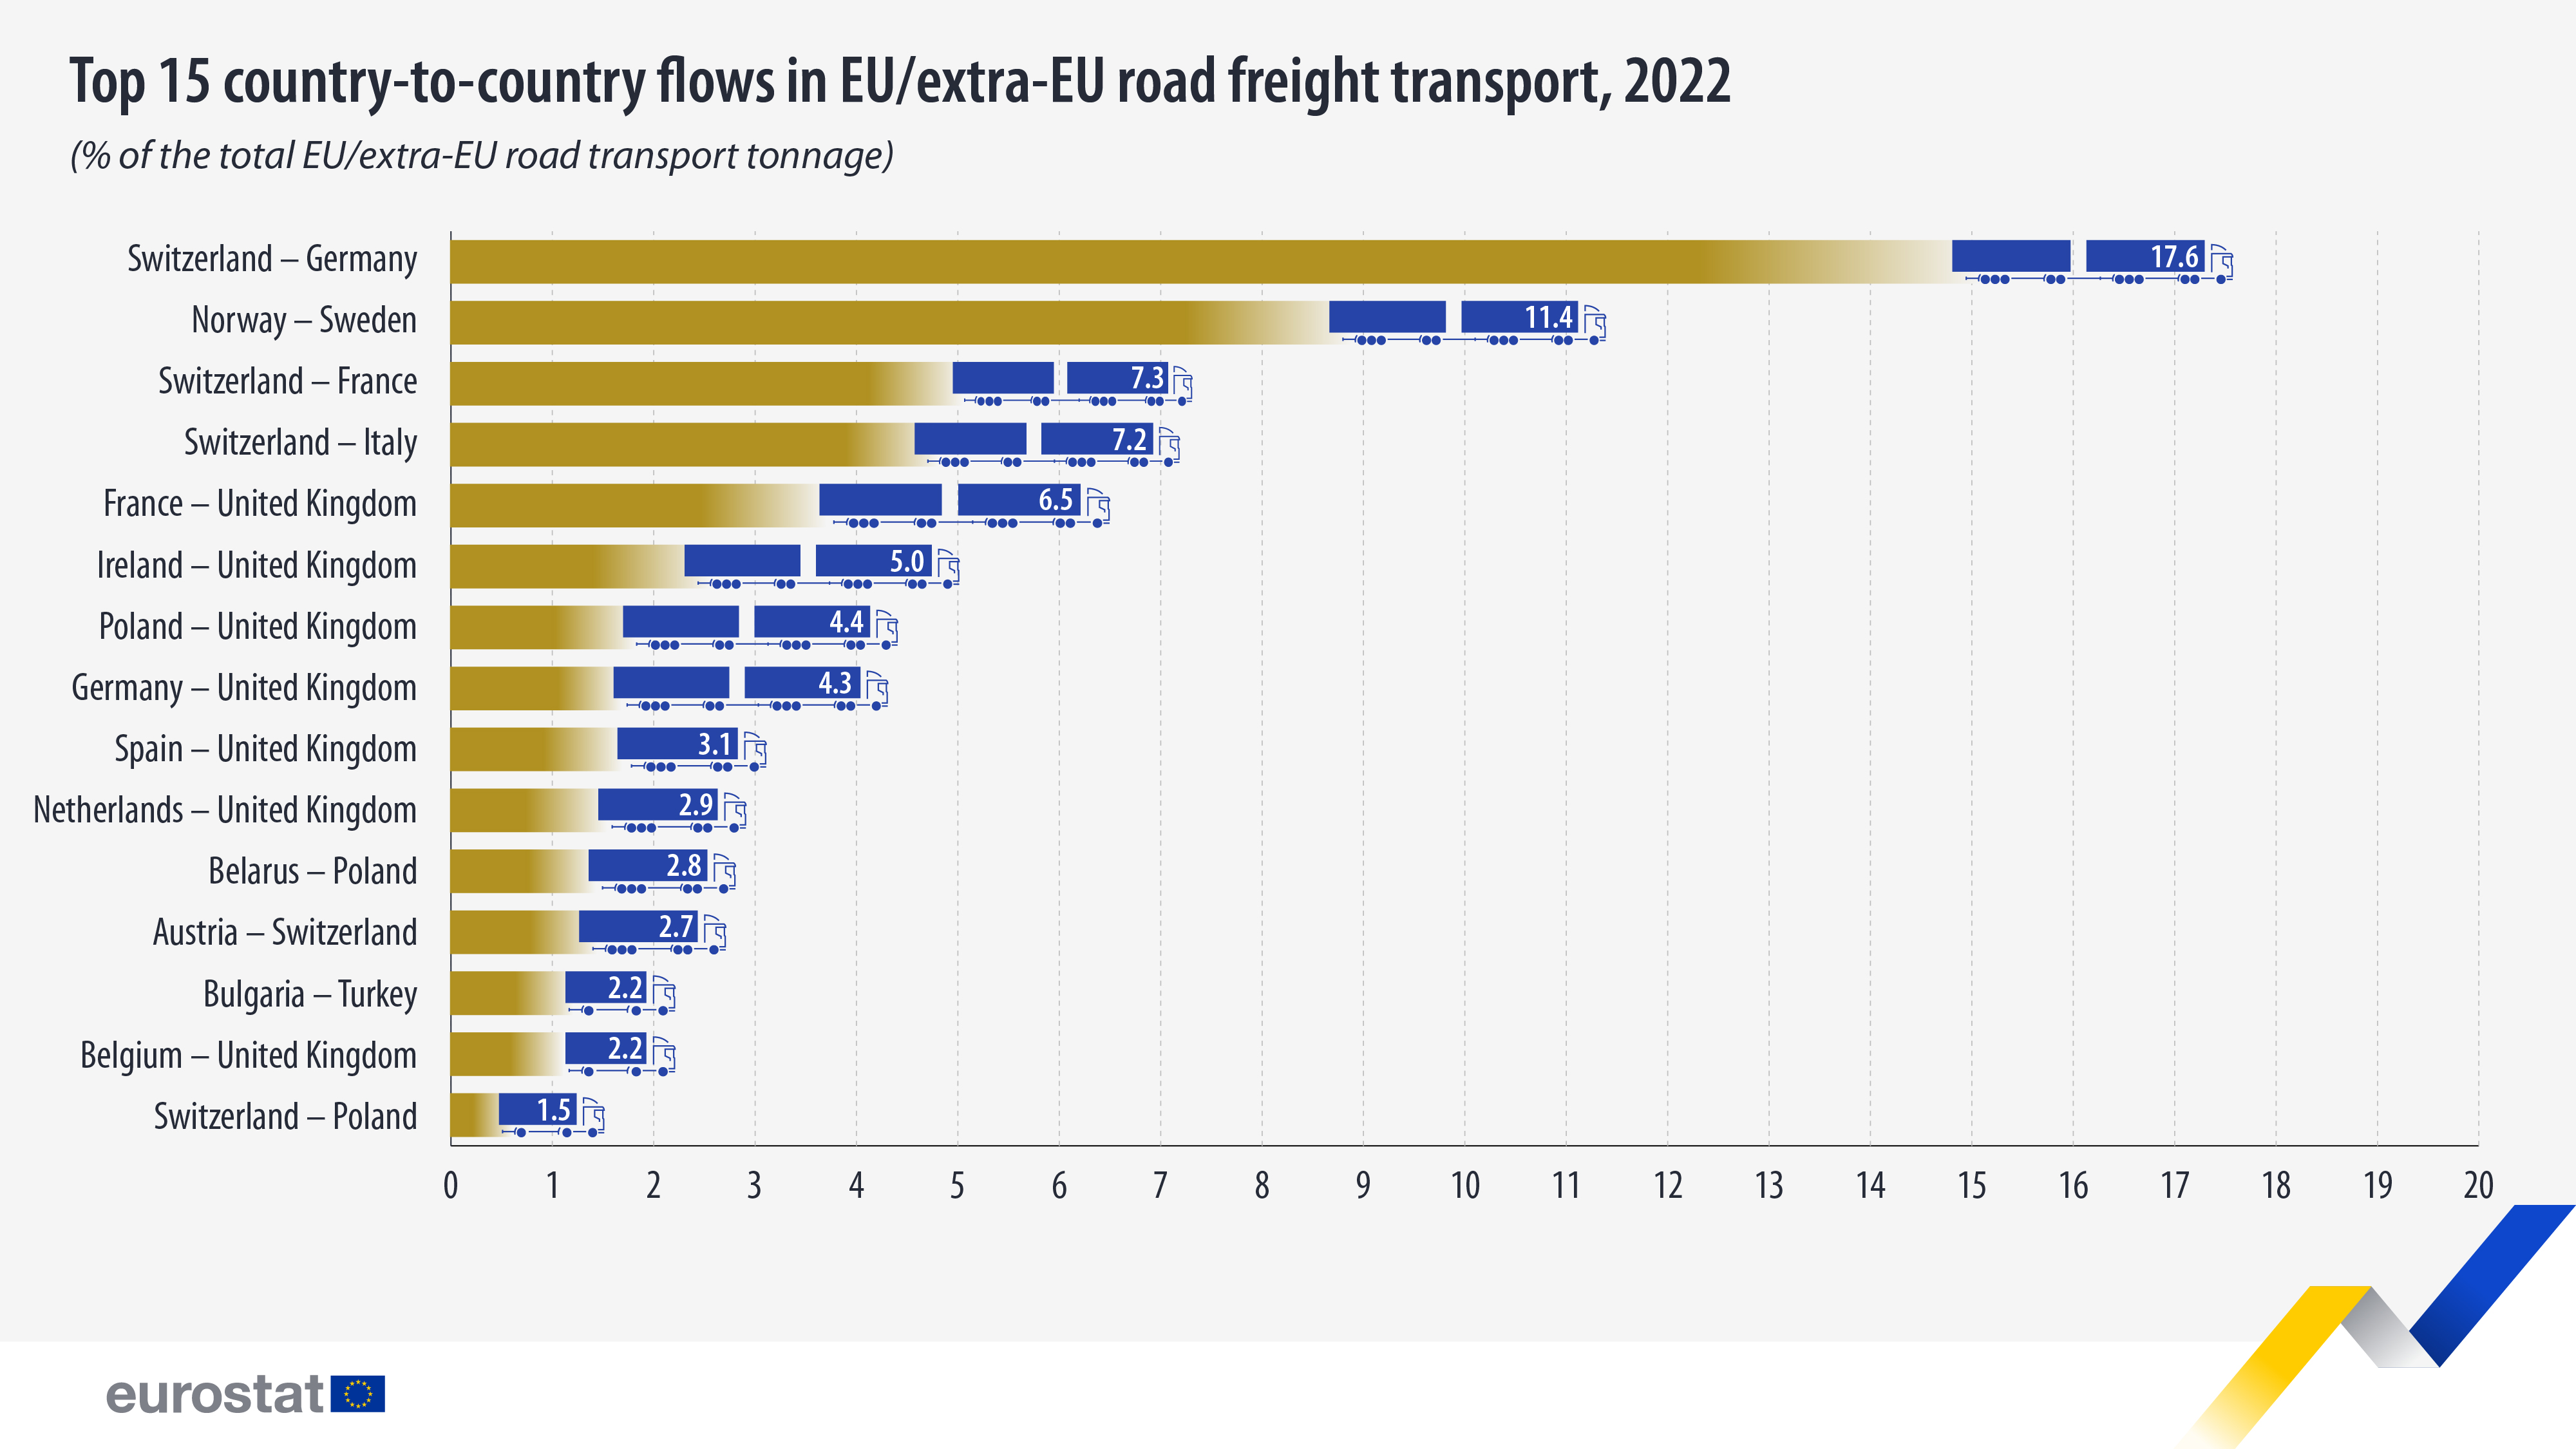 ραβδόγραμμα: κορυφαίες 15 ροές από χώρα σε χώρα στις οδικές εμπορευματικές μεταφορές ΕΕ/εκτός ΕΕ, 2022 (% της συνολικής χωρητικότητας οδικών μεταφορών ΕΕ/εκτός ΕΕ)